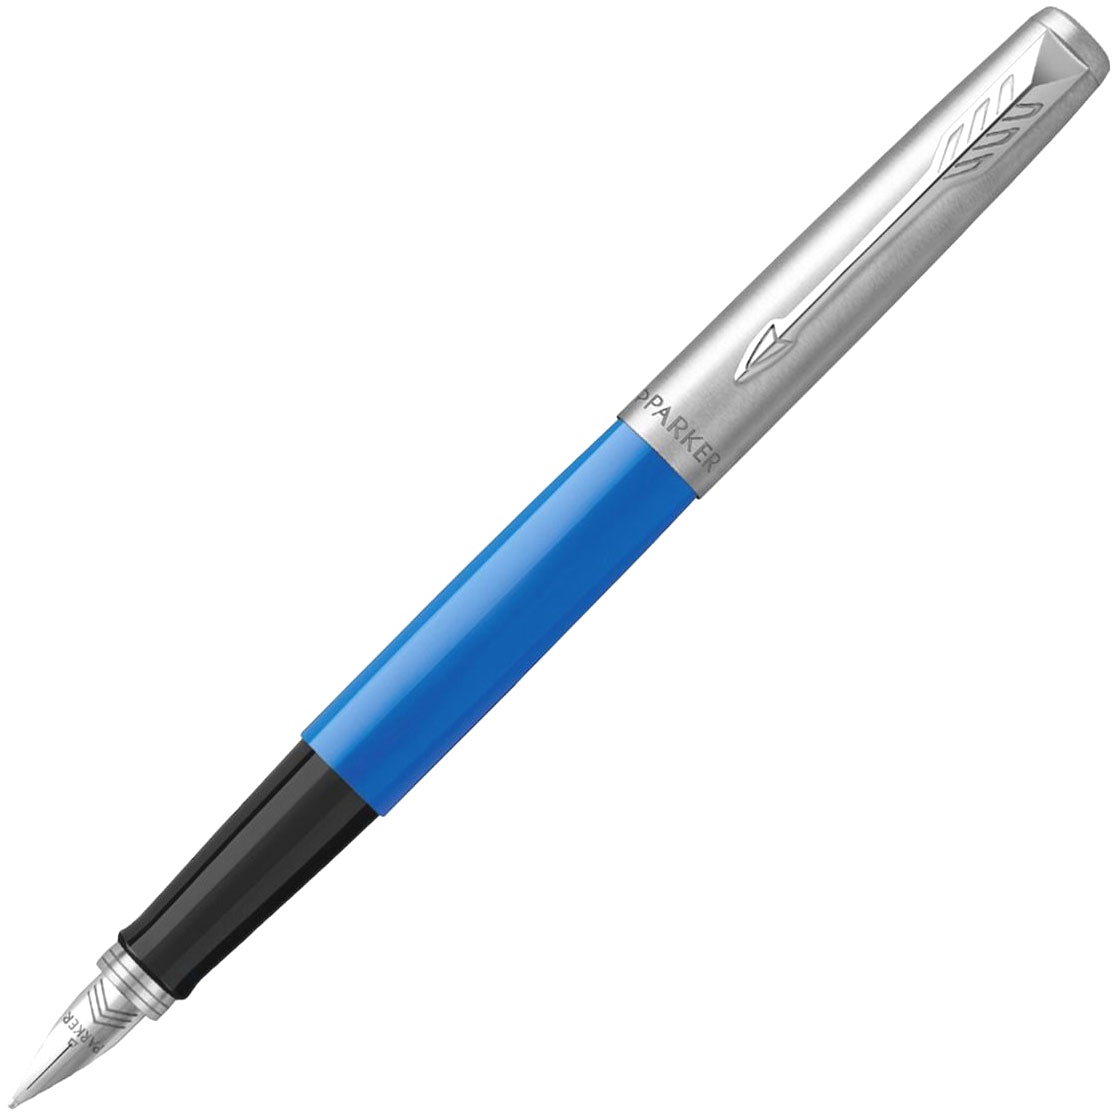  Ручка перьевая Parker Jotter Original F60, Blue Chrom CT (Перо M), фото 2